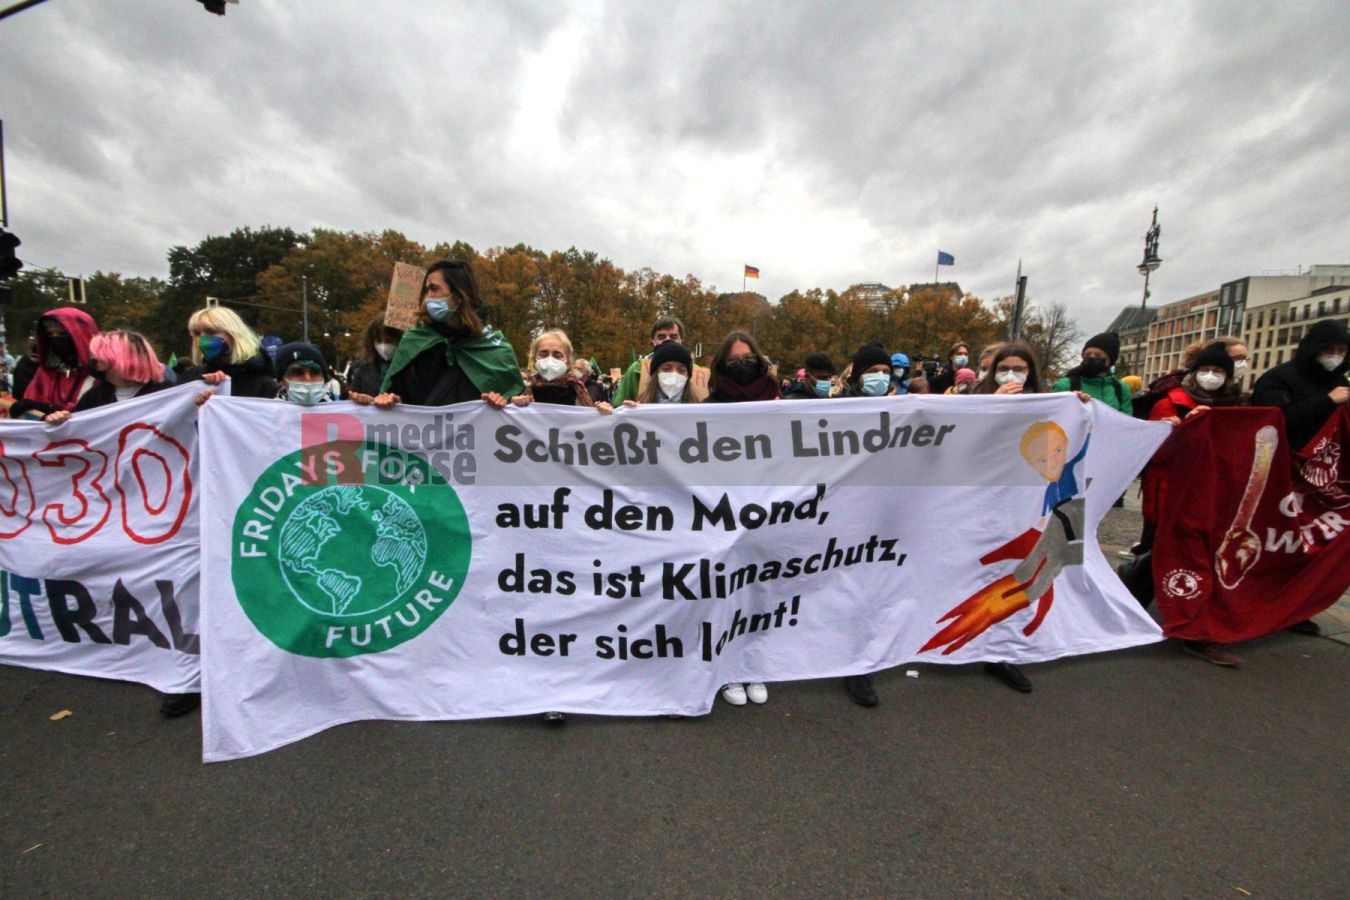 Klimaprotest in Berlin nach der Bundestagswahl <i>Bild Denner/R-mediabase</i> <br><a href=/confor2/?bld=59872&pst=59856&aid=86&dc=1701&i1=Denner/R-mediabase>Anfrage Download Bild 59872</a>  <a href=/wp-admin/post.php?post=59872&action=edit> / Edit</a><br><a href=/?p=59856>Zum Beitrag 59856</a>